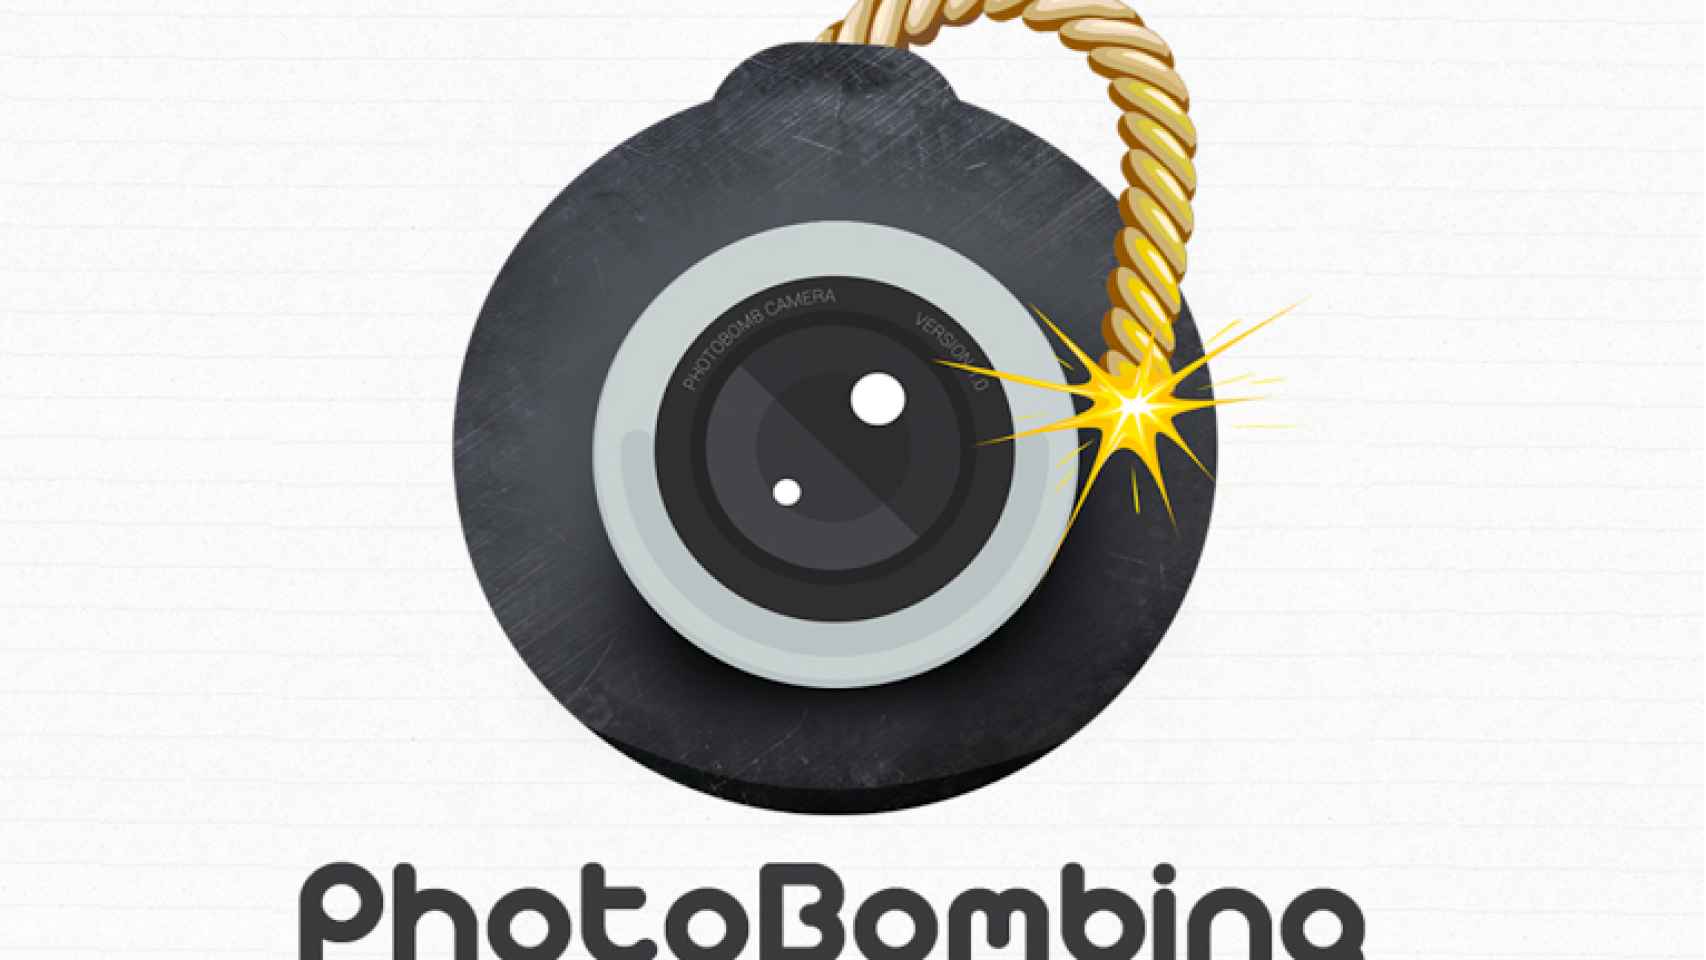 Crea fotos divertidas añadiendo todo tipo de pegatinas y caricaturas con PhotoBomb